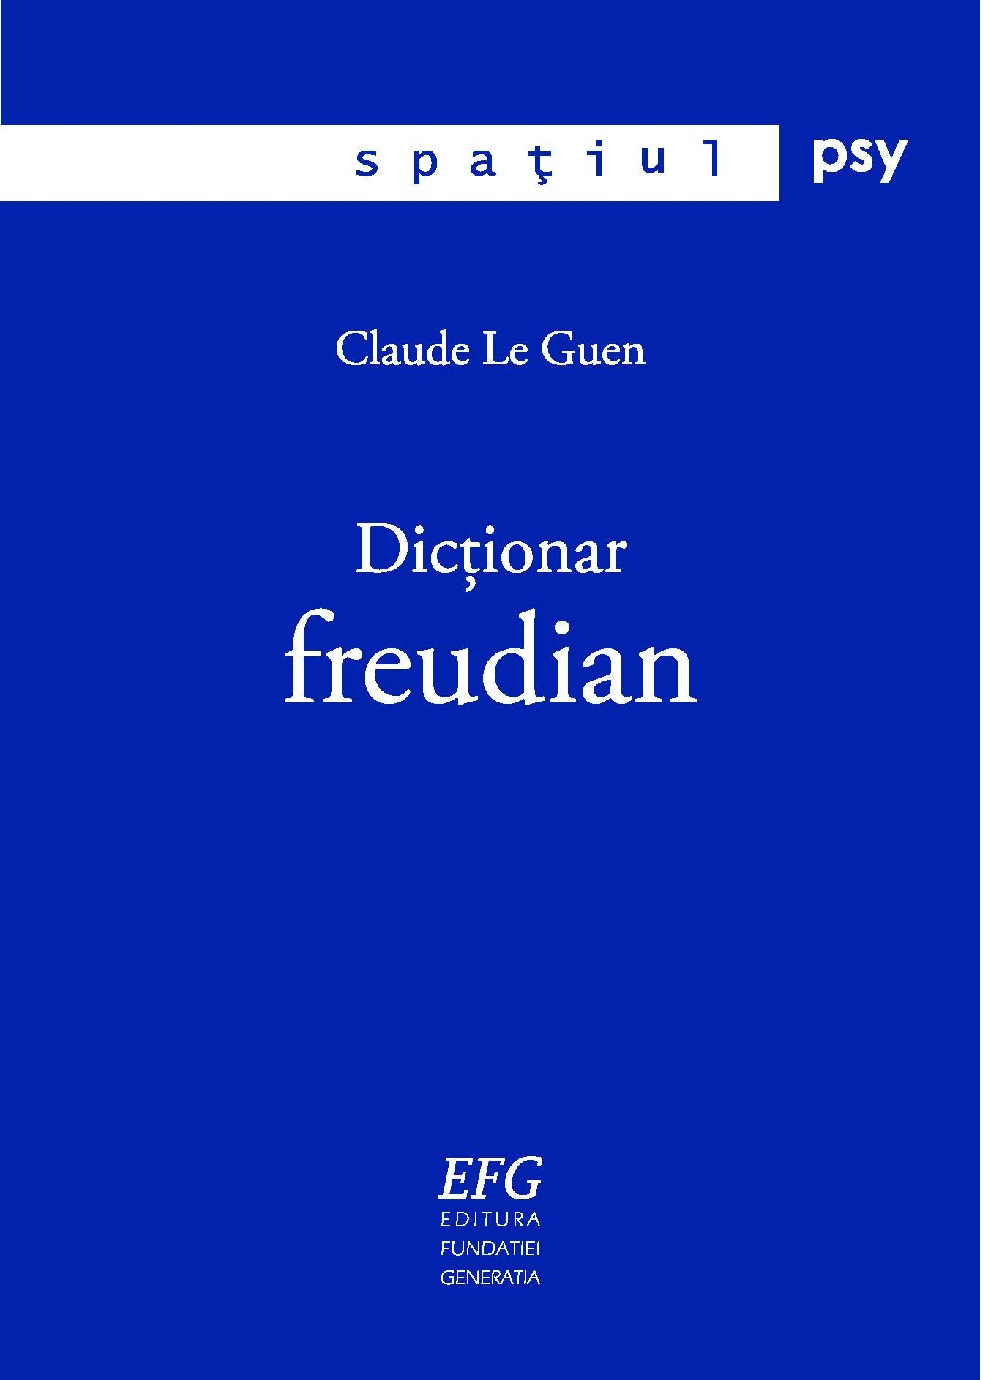 Dictionar freudian | Claude Le Guen carturesti.ro imagine 2022